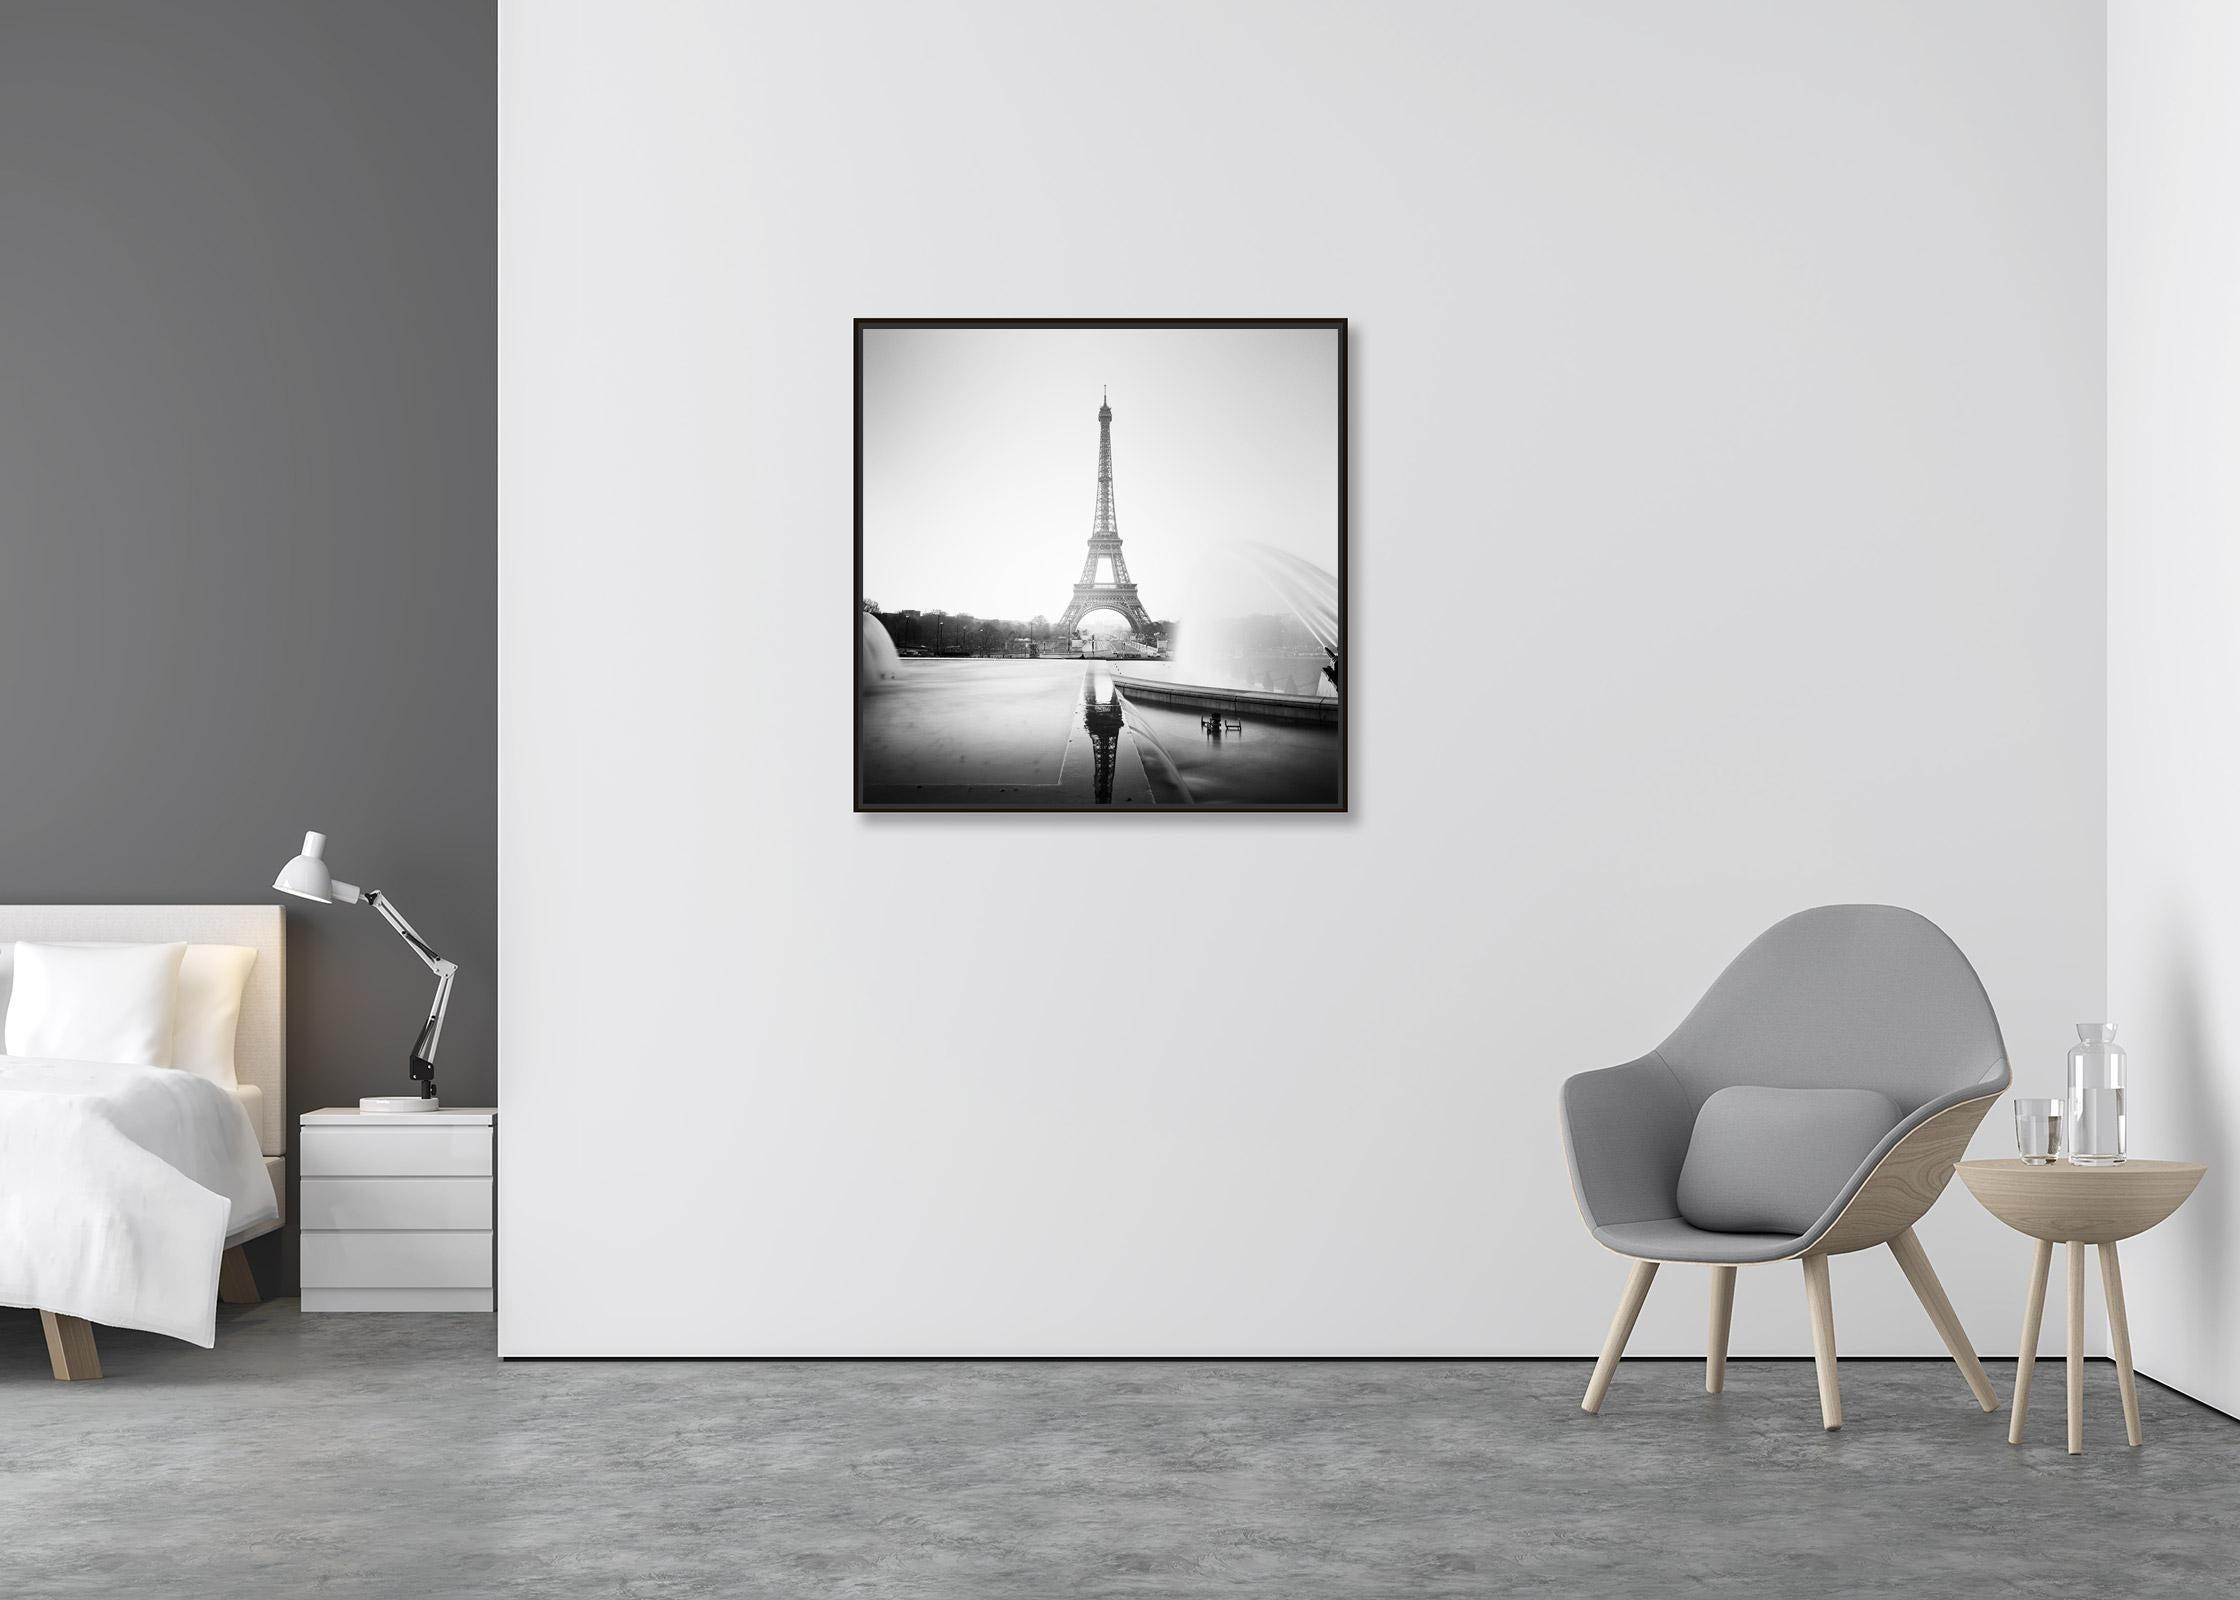 Eiffelturm Fontaine du trocadero Paris, Schwarz-Weiß-Stadtlandschaftsfotografie (Zeitgenössisch), Photograph, von Gerald Berghammer, Ina Forstinger